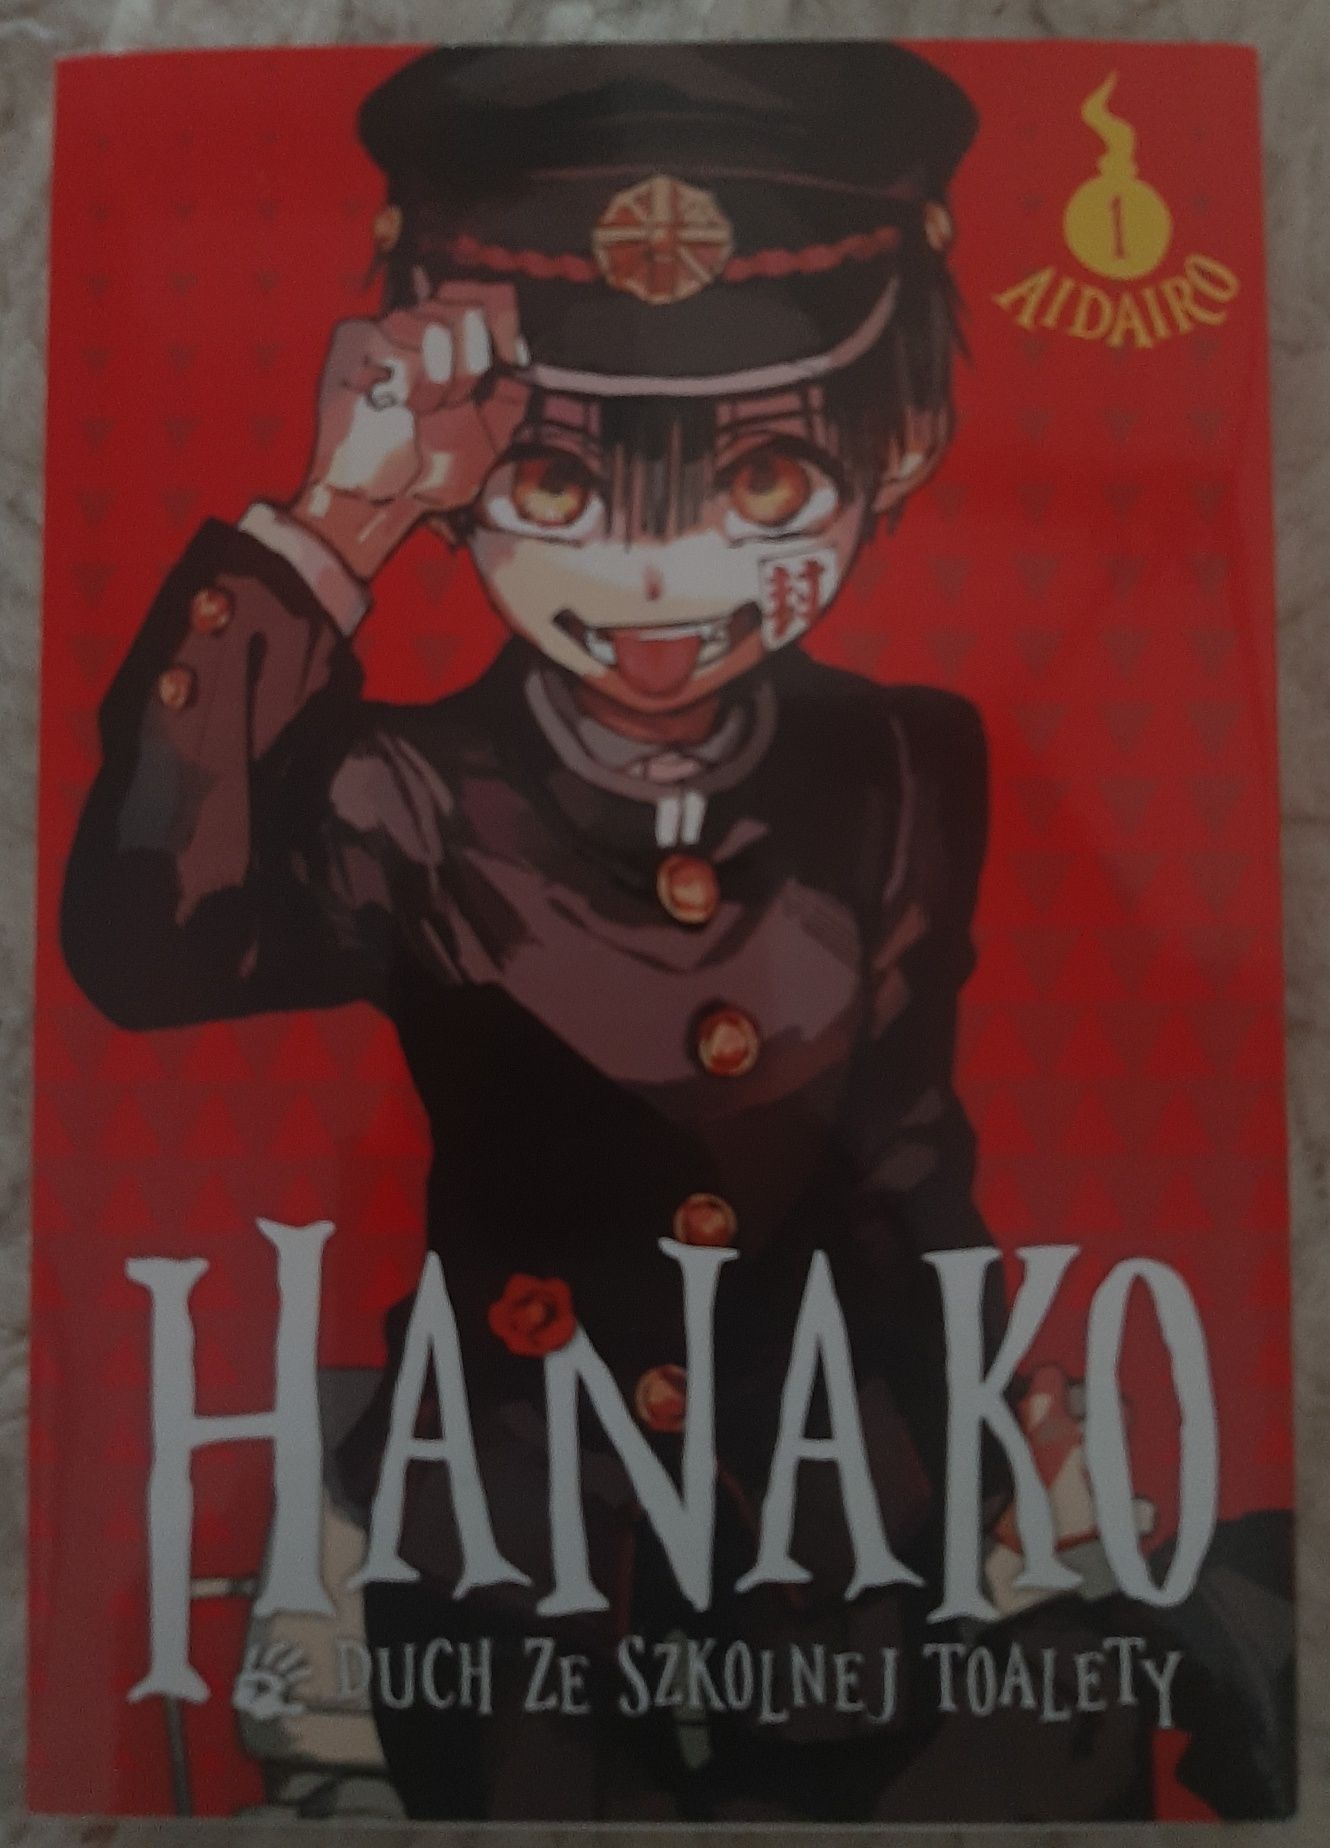 " Hanako Duch Ze Szkolnej Toalety" 1